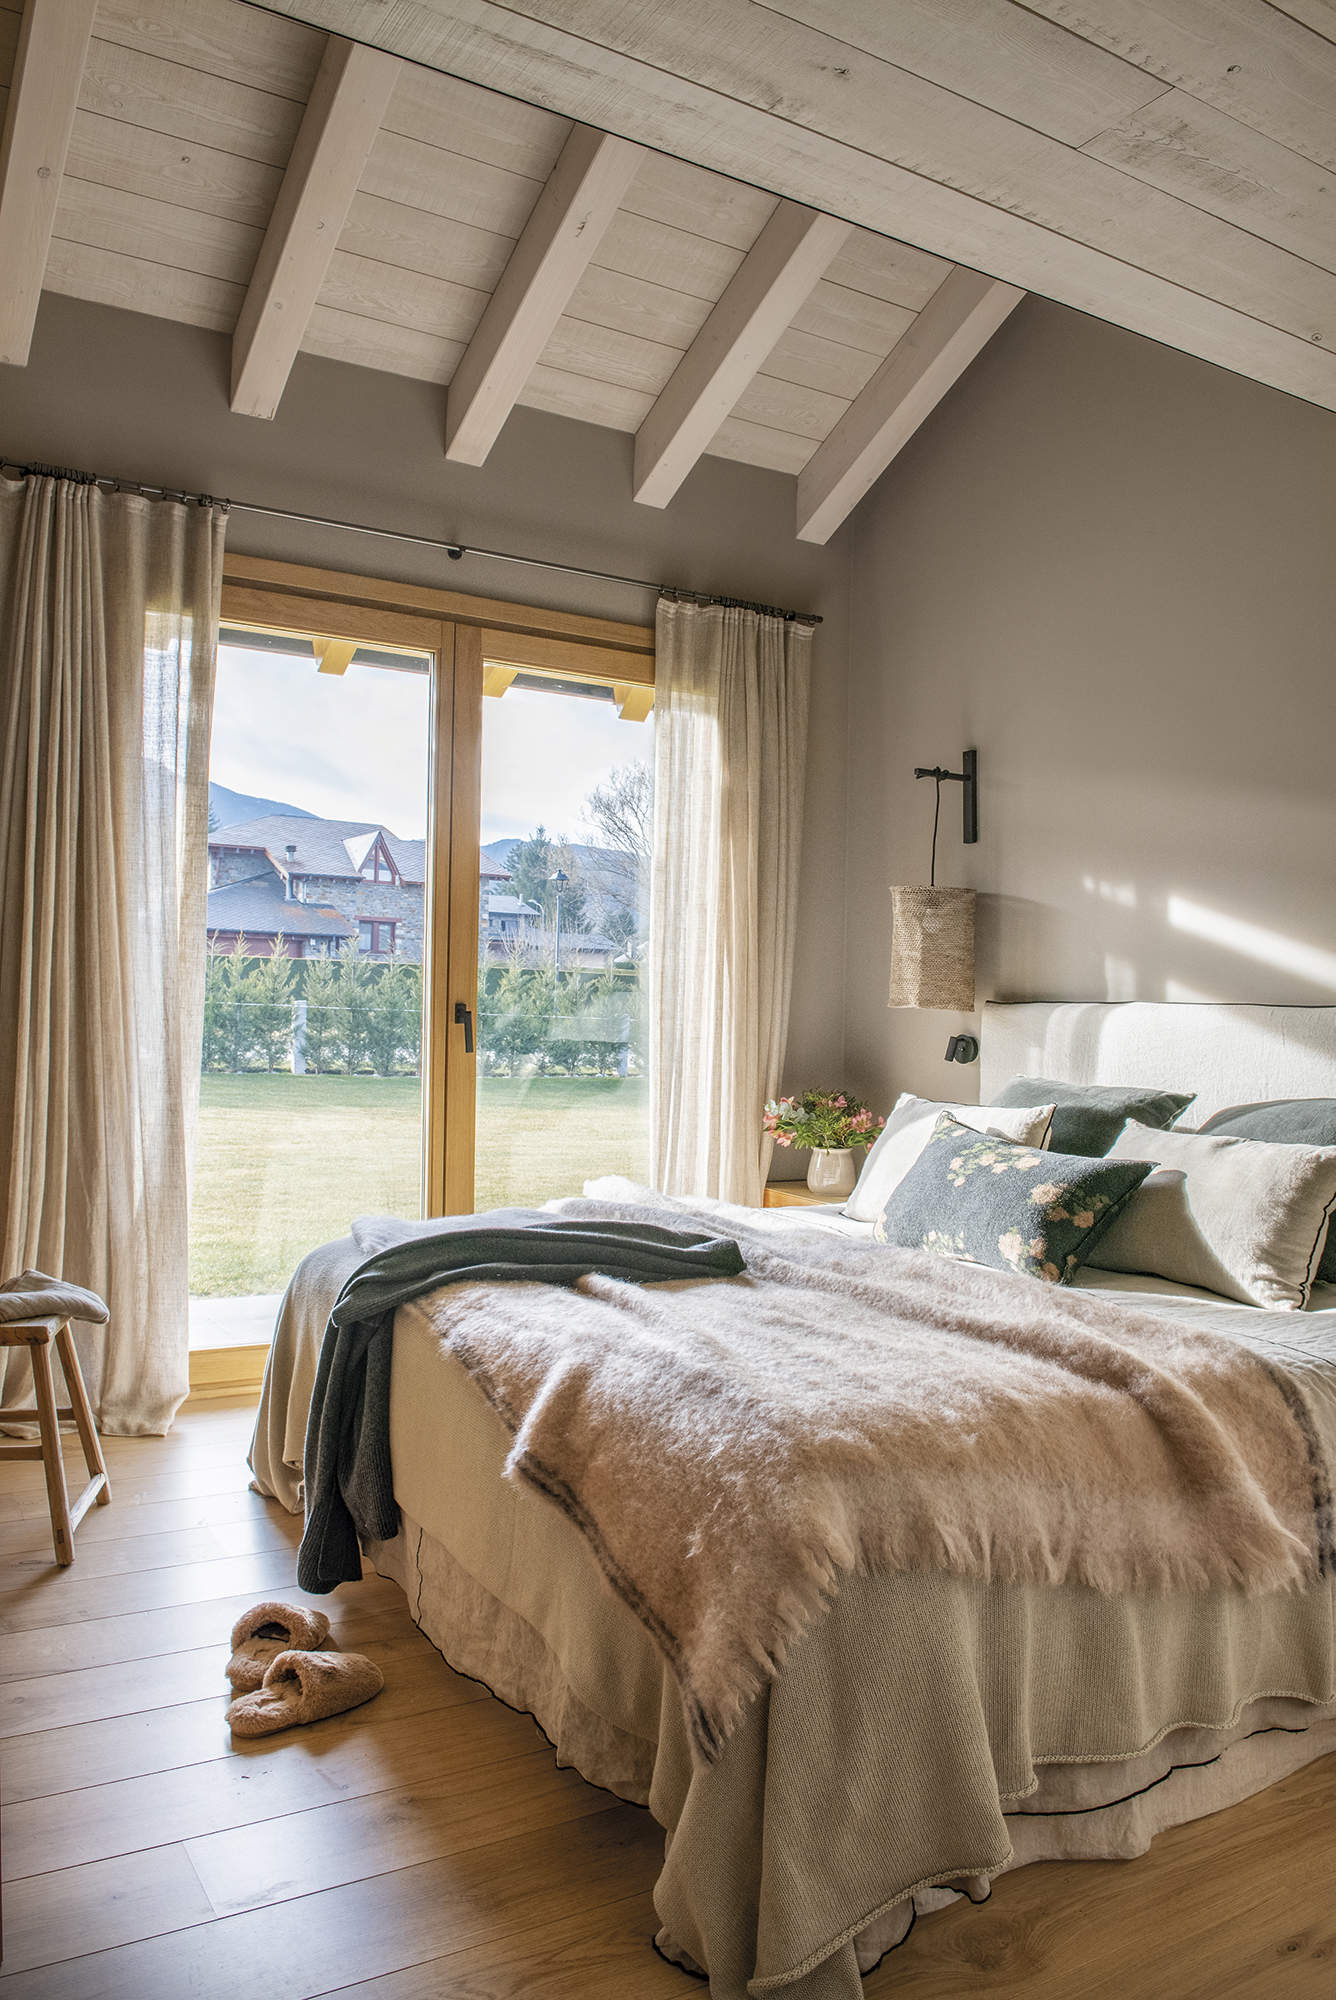 Dormitorio principal con suelo de parquet, salida a la terraza, cortinas de lino, pintura de pared gris.